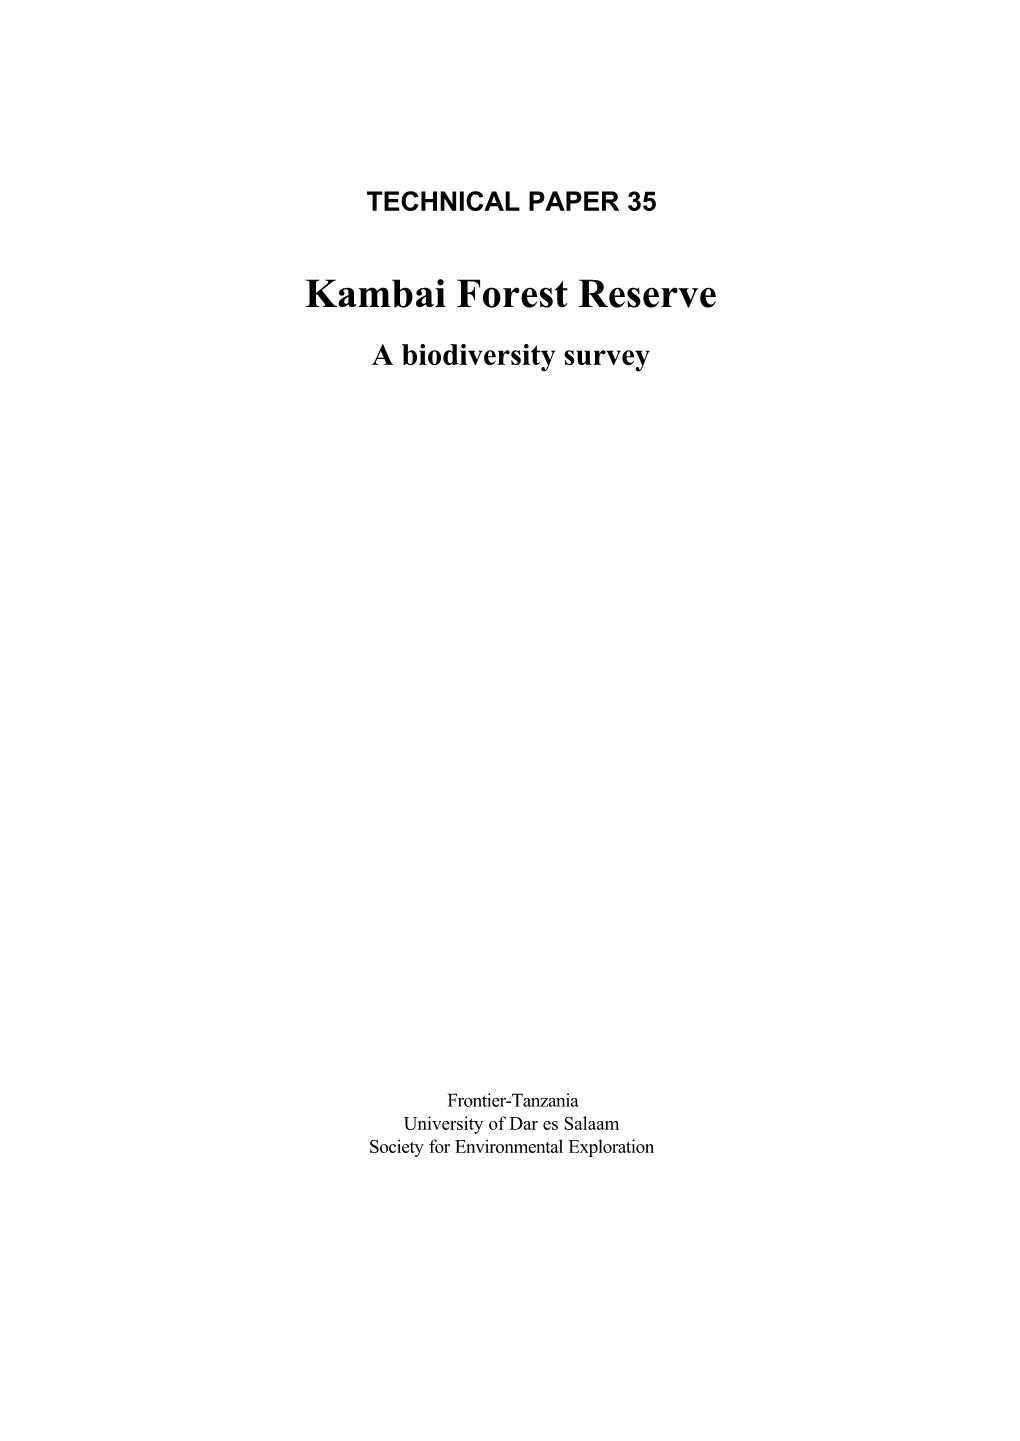 Kambai Forest Reserve a Biodiversity Survey